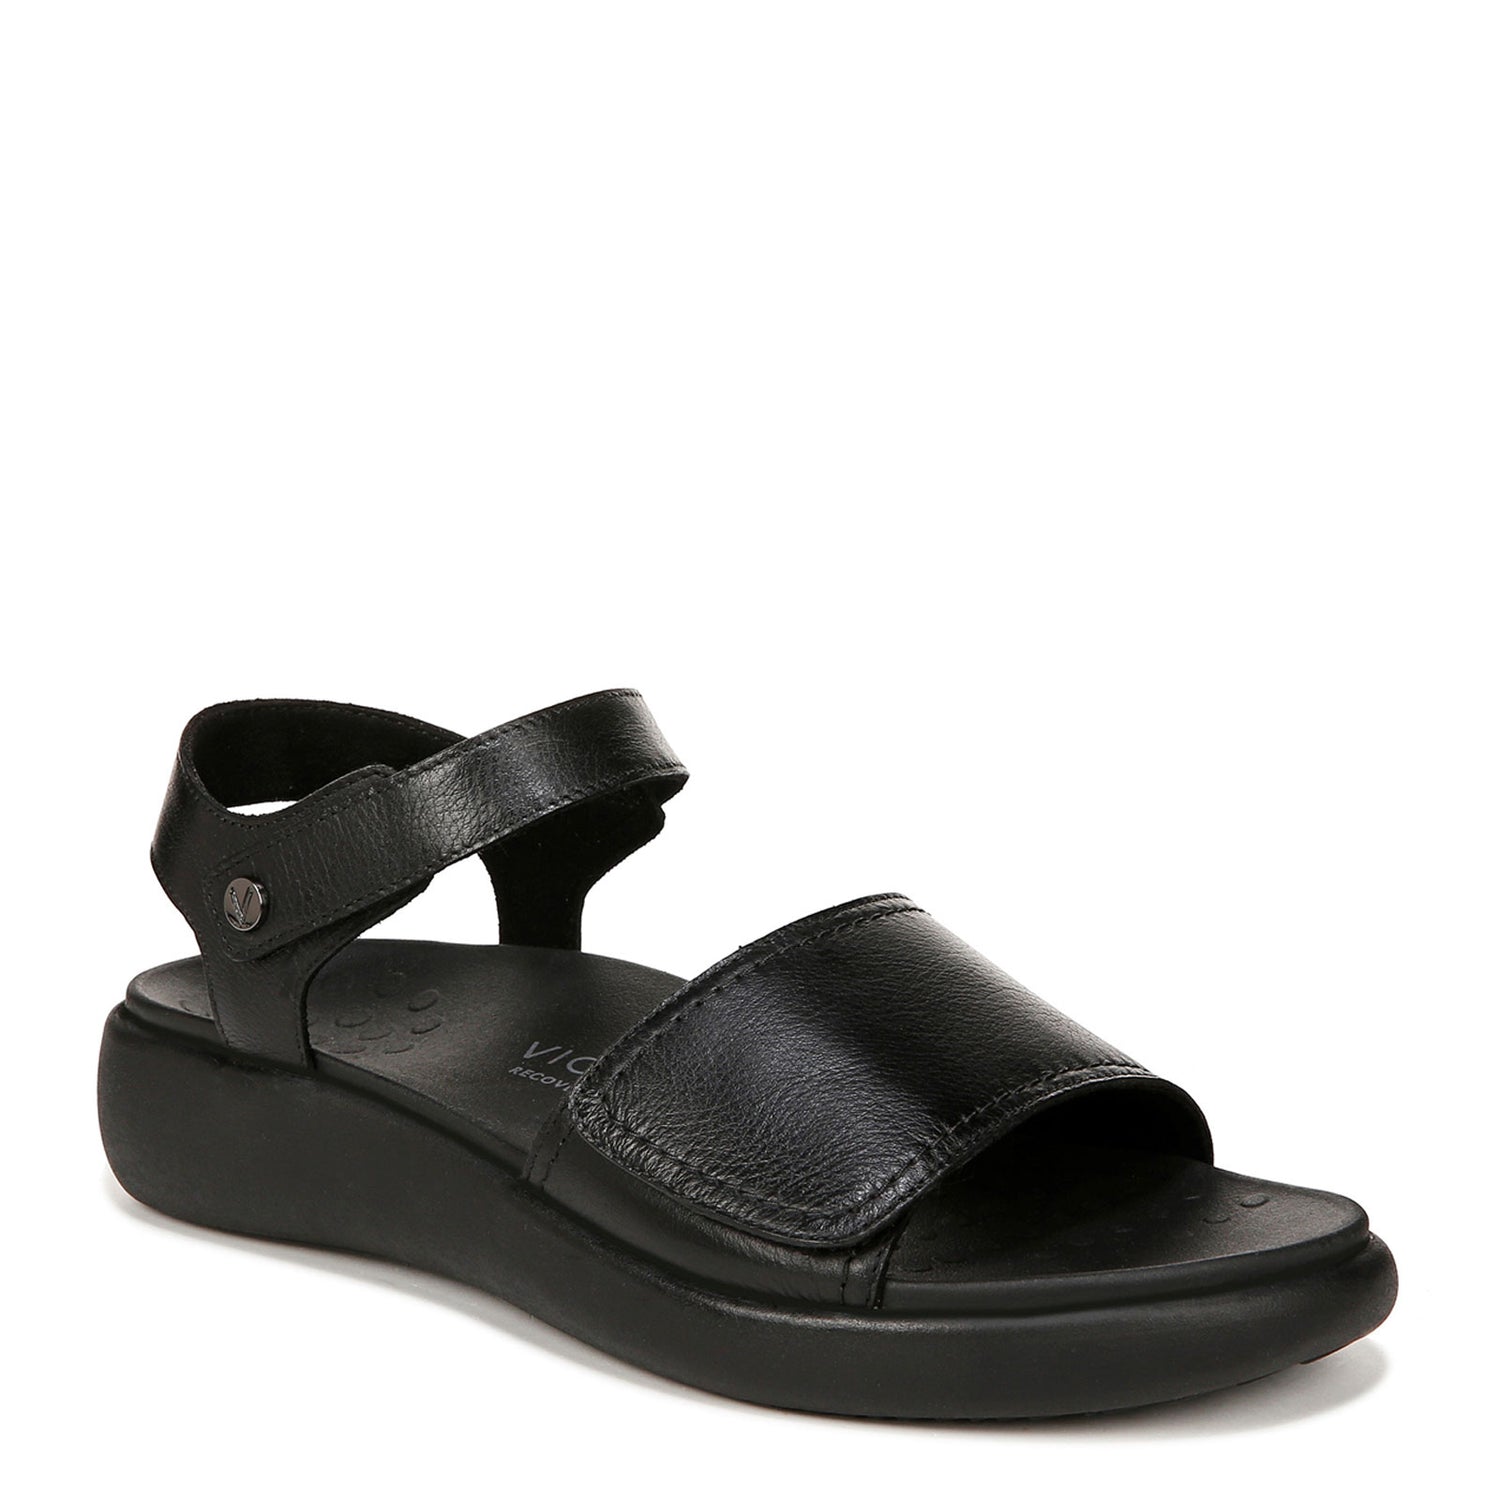 Peltz Shoes  Women's Vionic Tessa Sandal Black Leather I8710L1001